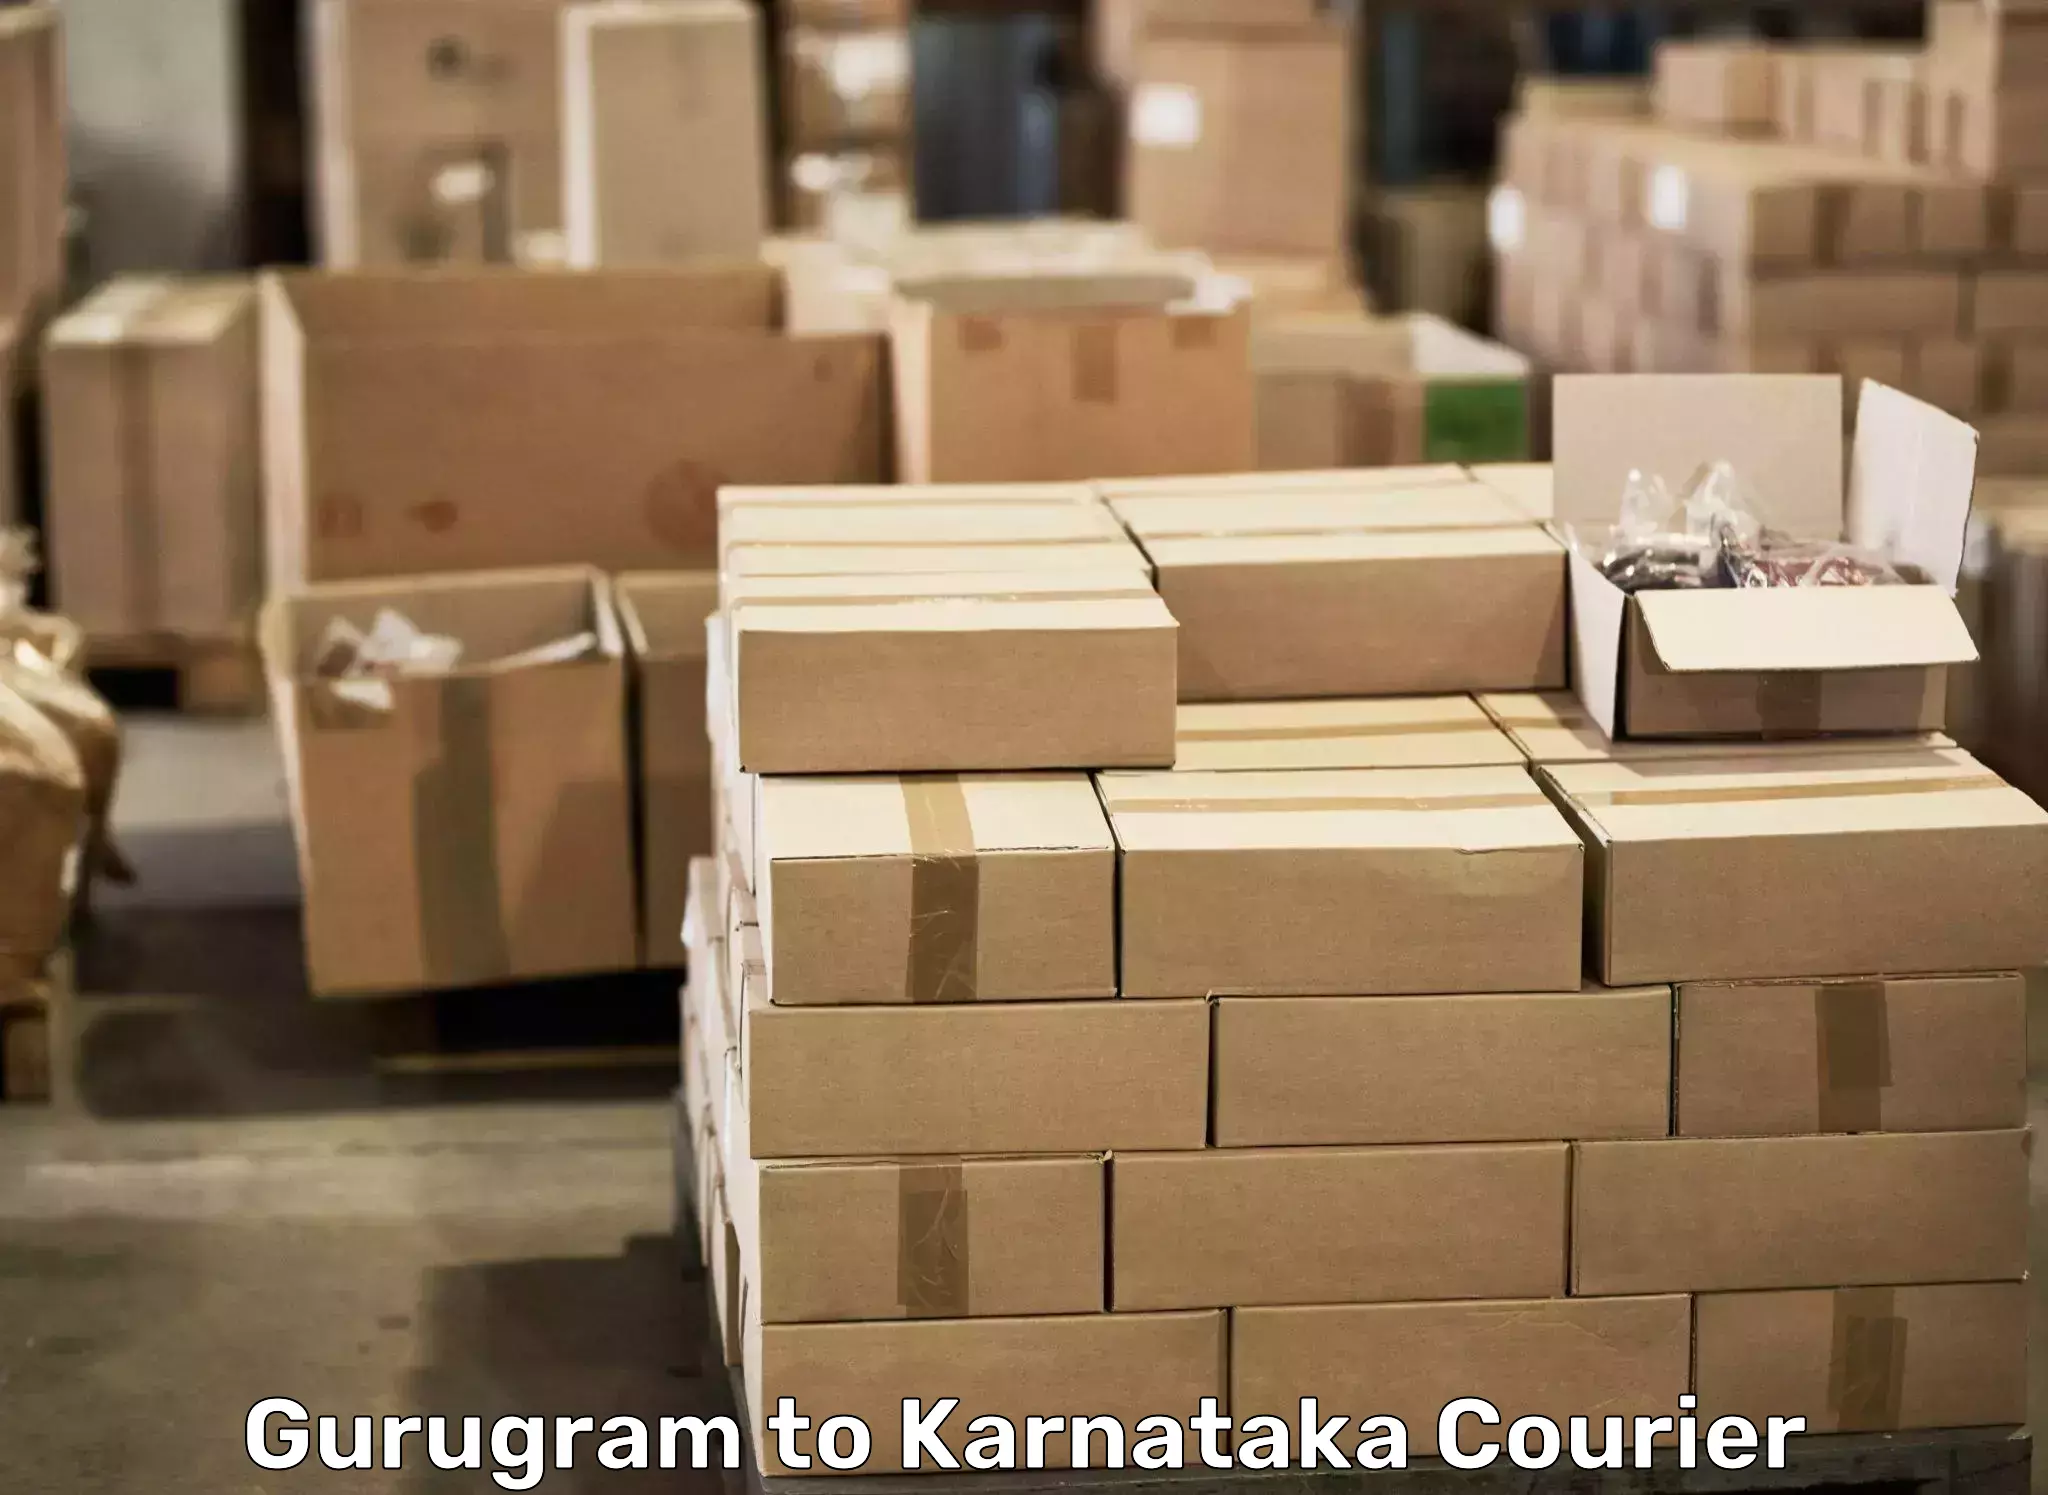 Customized moving experience Gurugram to Bangalore